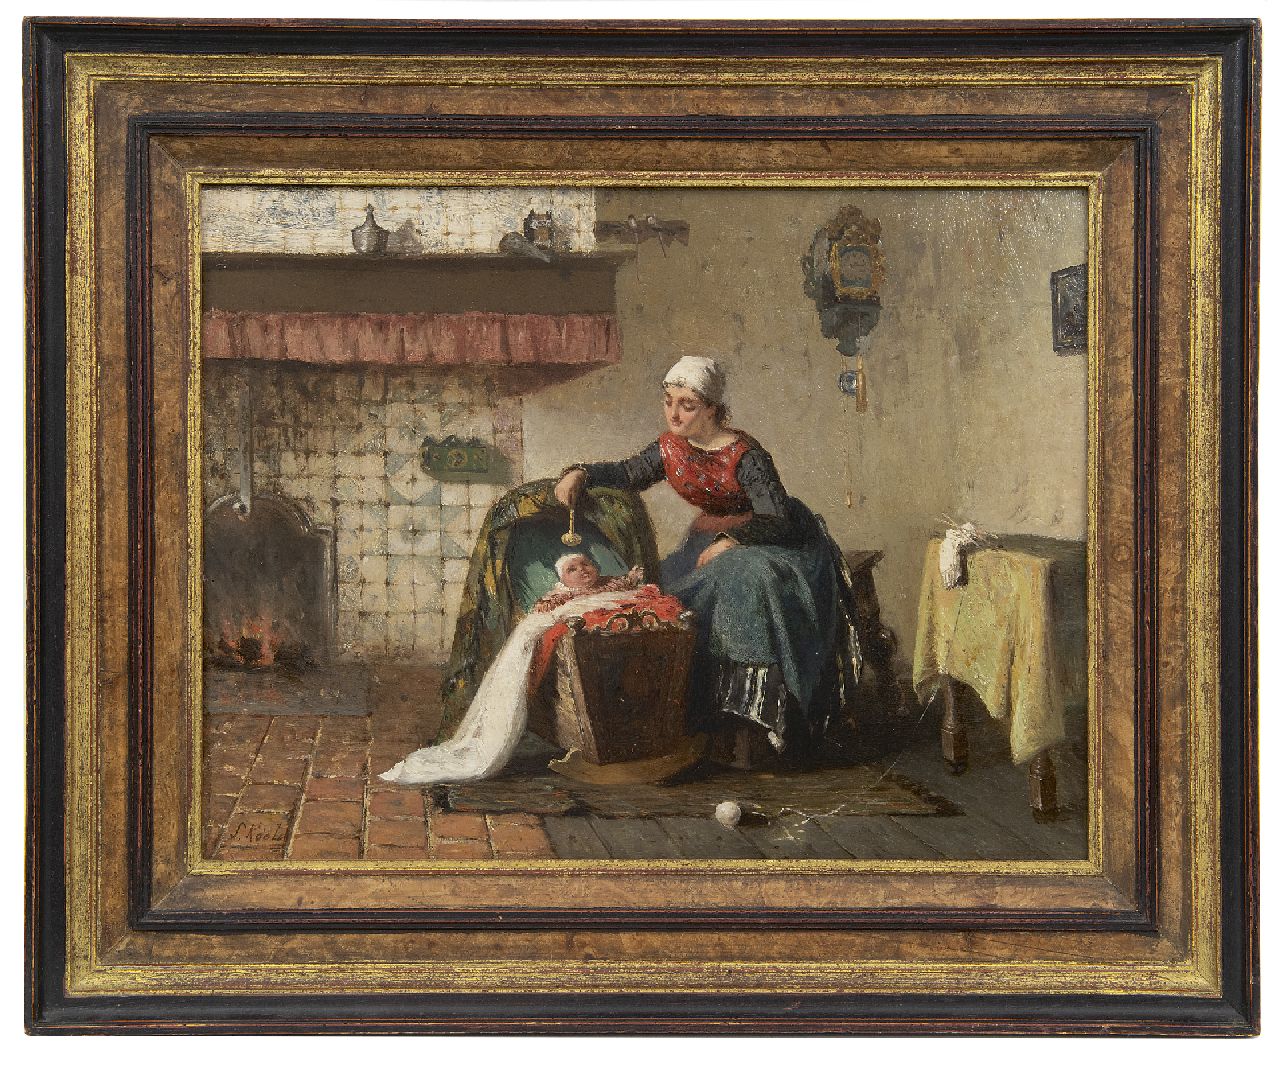 Kool S.C.  | Sipke 'Cornelis' Kool | Schilderijen te koop aangeboden | Moeder en kind bij het haardvuur, olieverf op paneel 26,6 x 35,0 cm, gesigneerd linksonder en gedateerd 1881